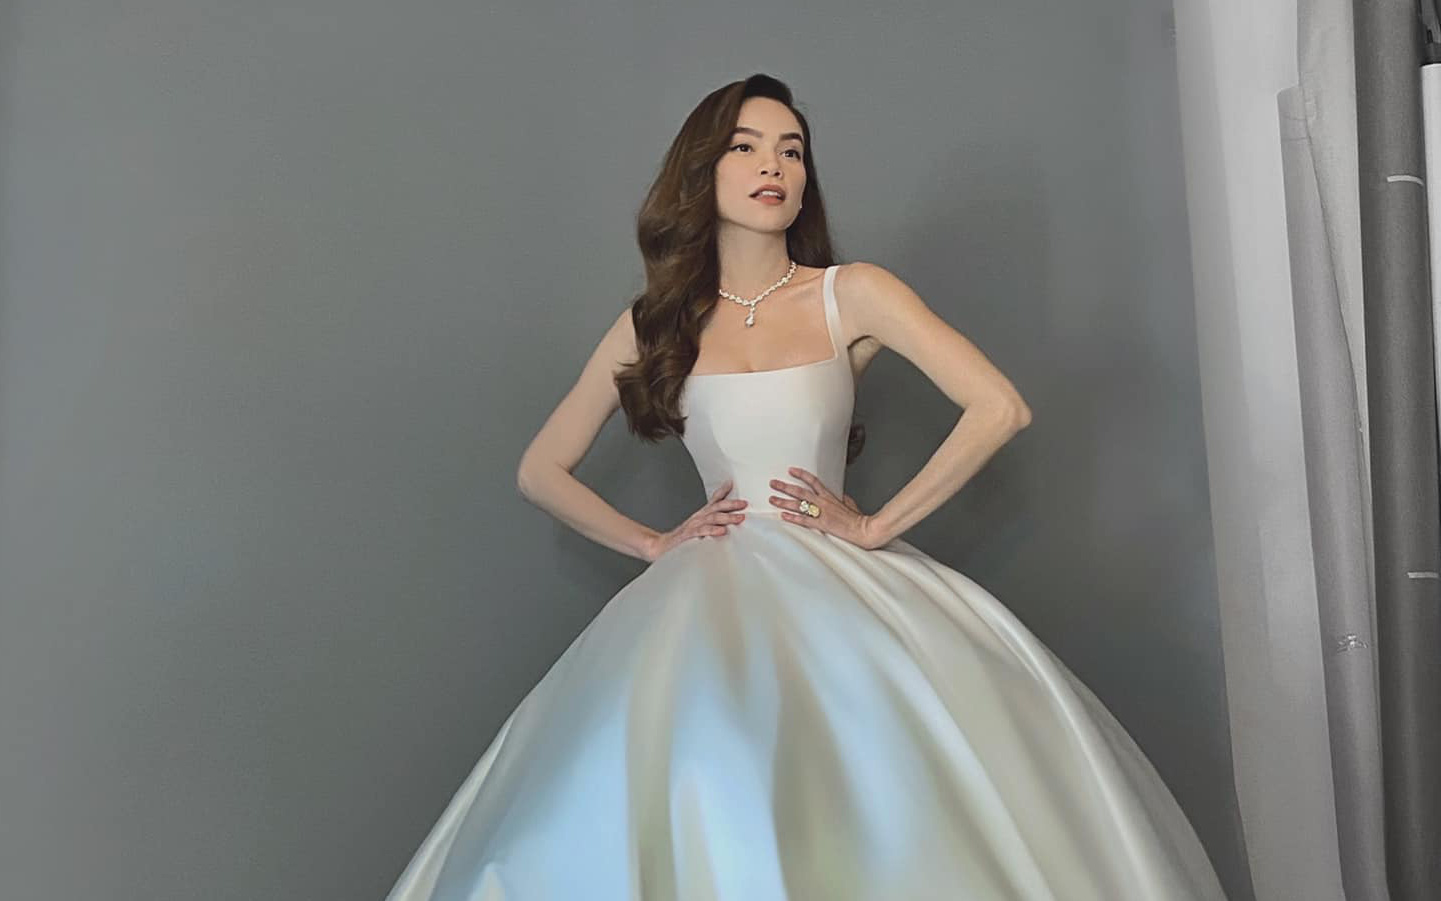 Hồ Ngọc Hà xuất hiện xinh đẹp khi diện váy cưới do Lý Quí Khánh chuẩn bị nhưng lại lộ khuyết điểm quá rõ ràng trên cơ thể